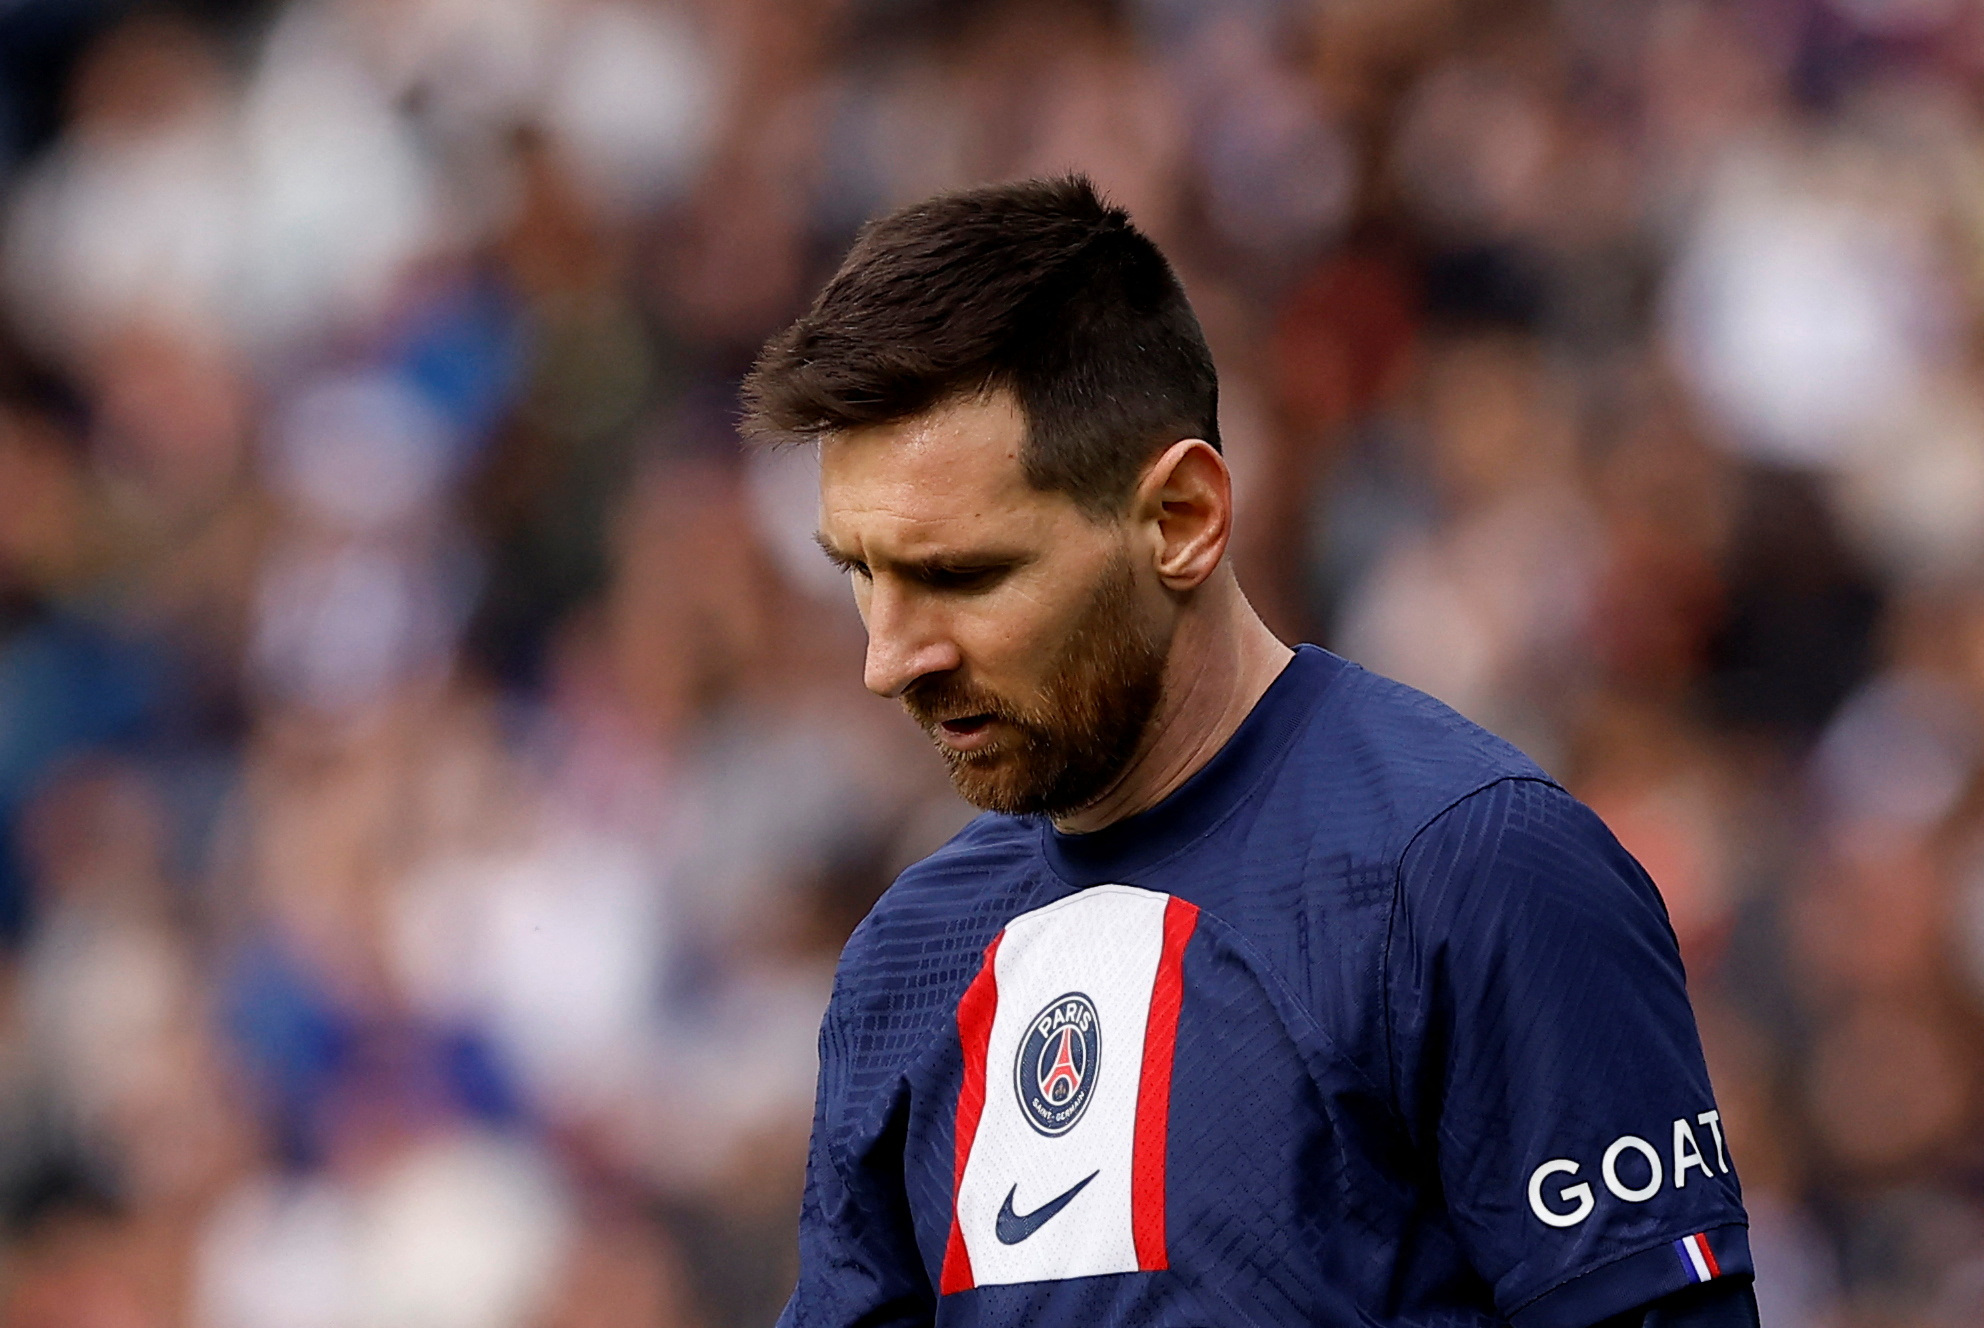 Una vez que finalice la suspensión, a Messi le quedarían tres partidos por jugar con el PSG. Pero habrá que ver si no arregla una salida anticipada, máxime luego de los insultos de los ultras (REUTERS/Christian Hartmann/File Photo)